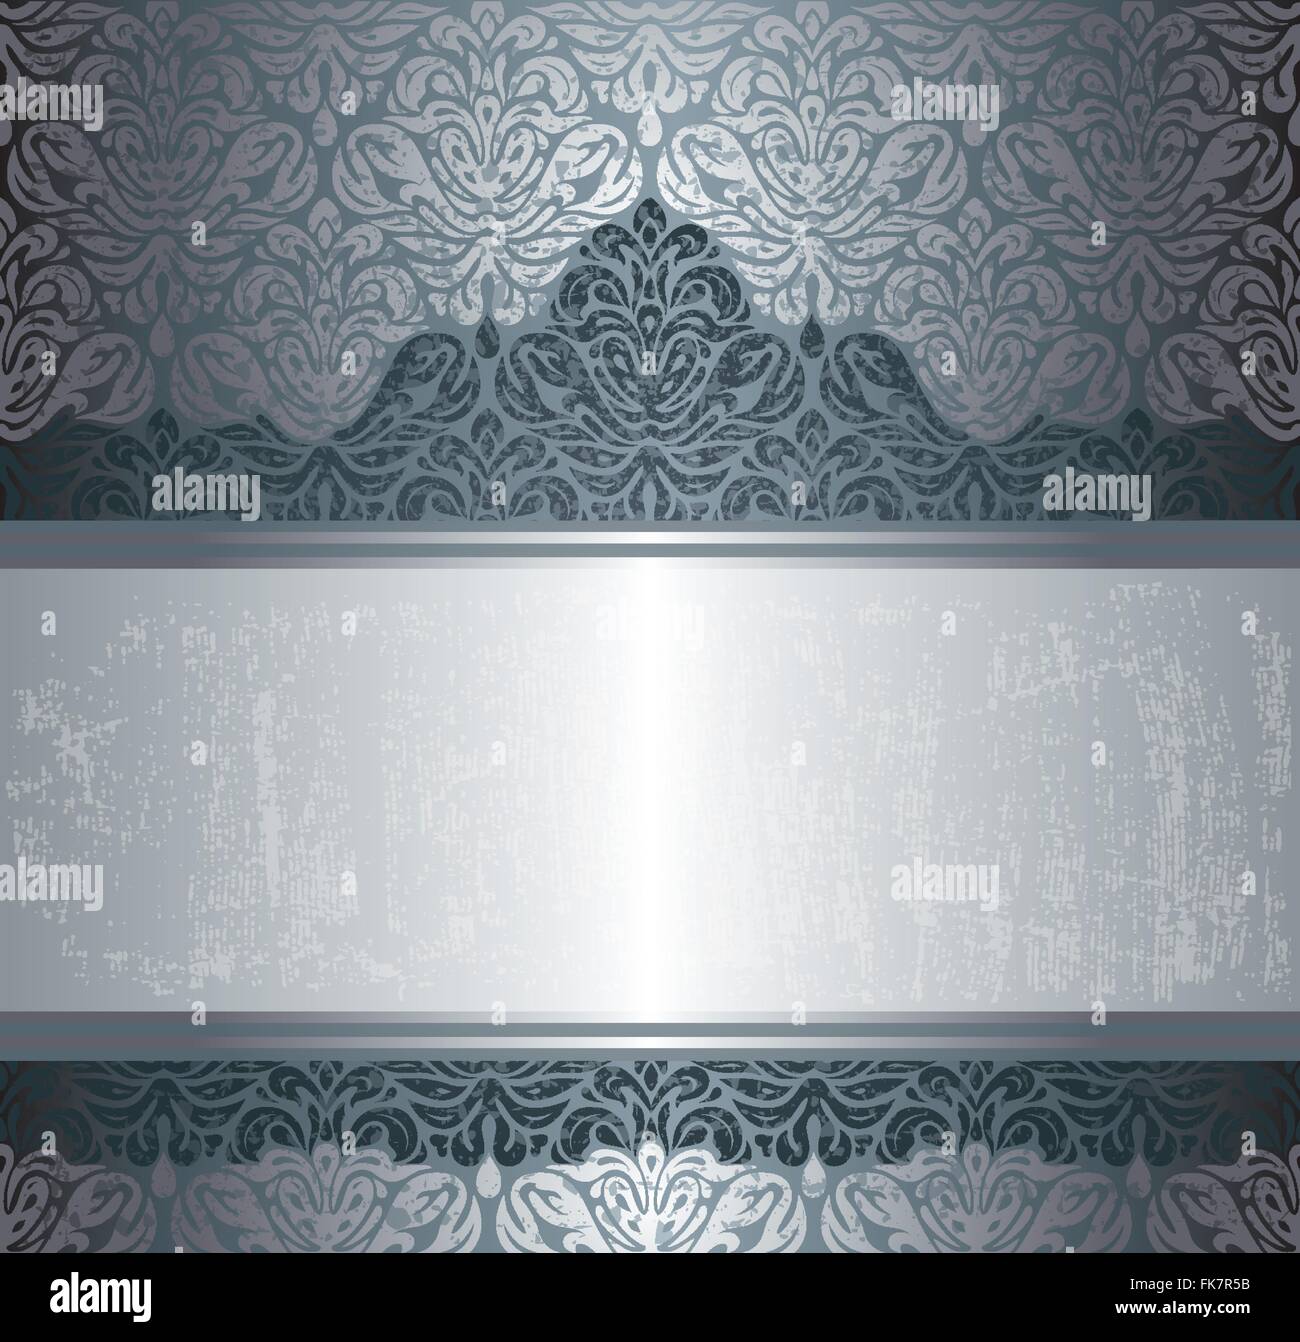 Dunkel Silber Luxus Muster Vintage Einladung Hintergrunddesign Stock Vektor